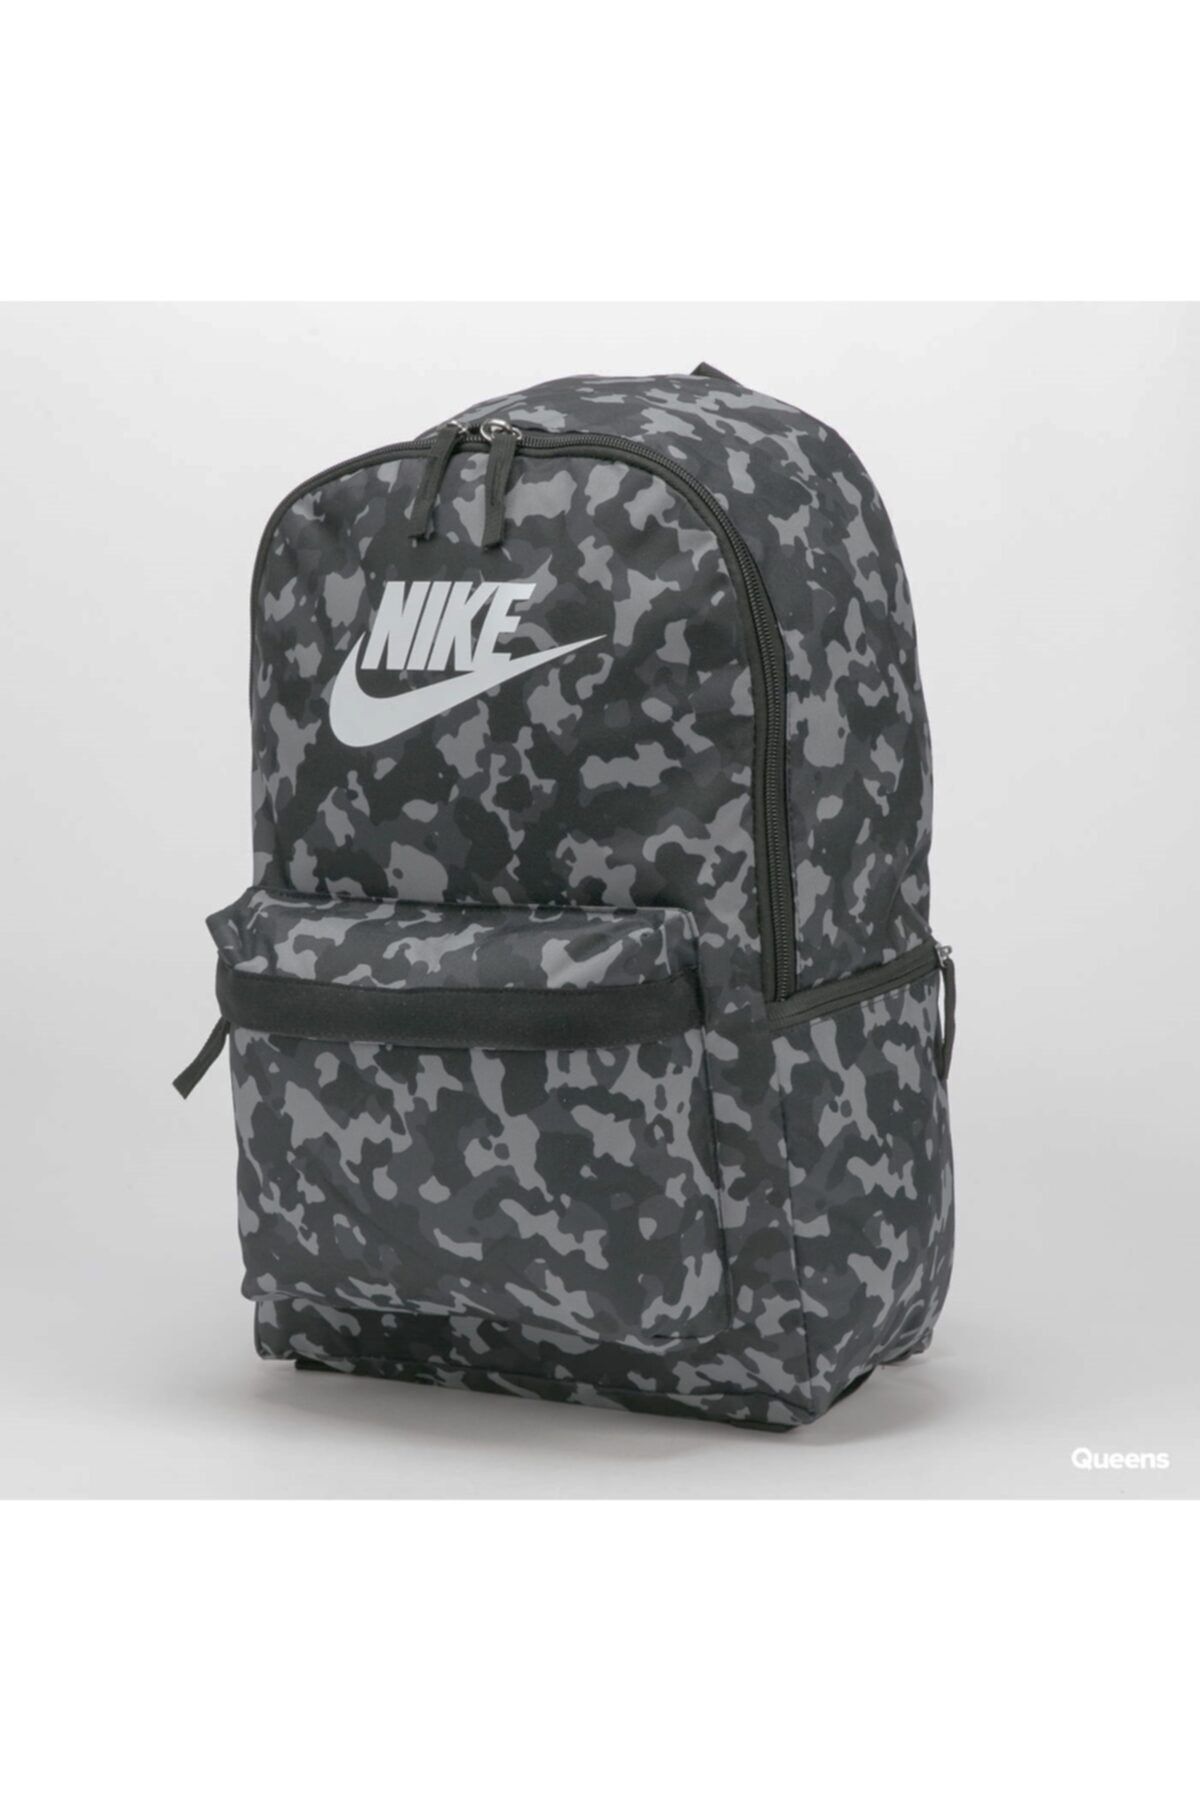 Nike Sırt Çantası Desenli Cv0835 Siyah Gri Laptop Bölmeli